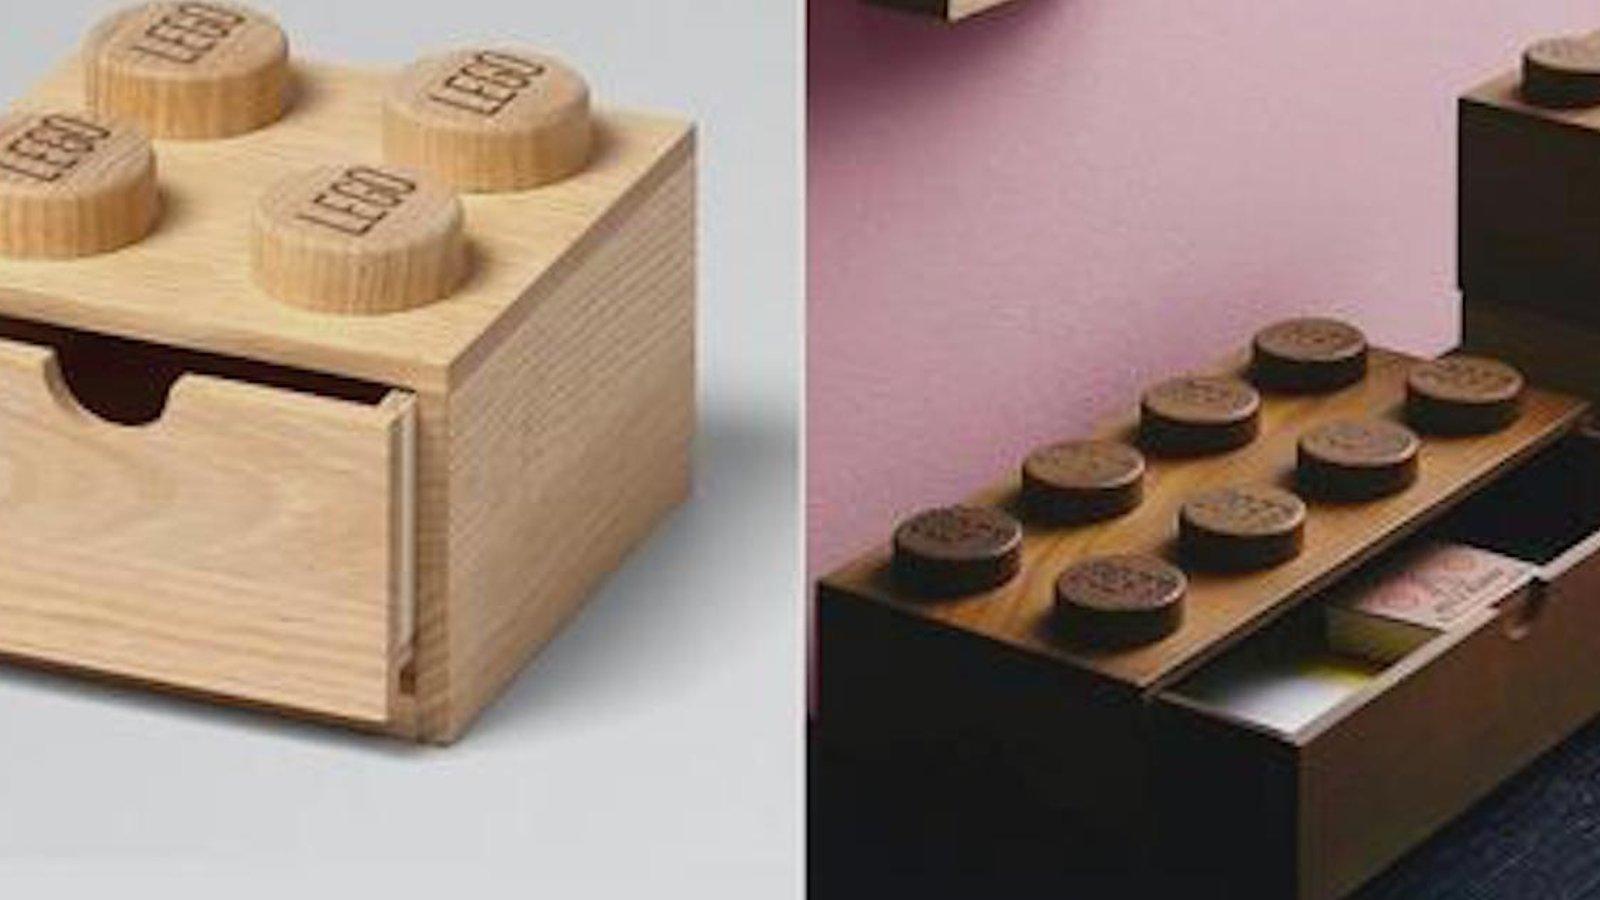 LEGO crée une gamme de petits meubles et accessoires en en bois 